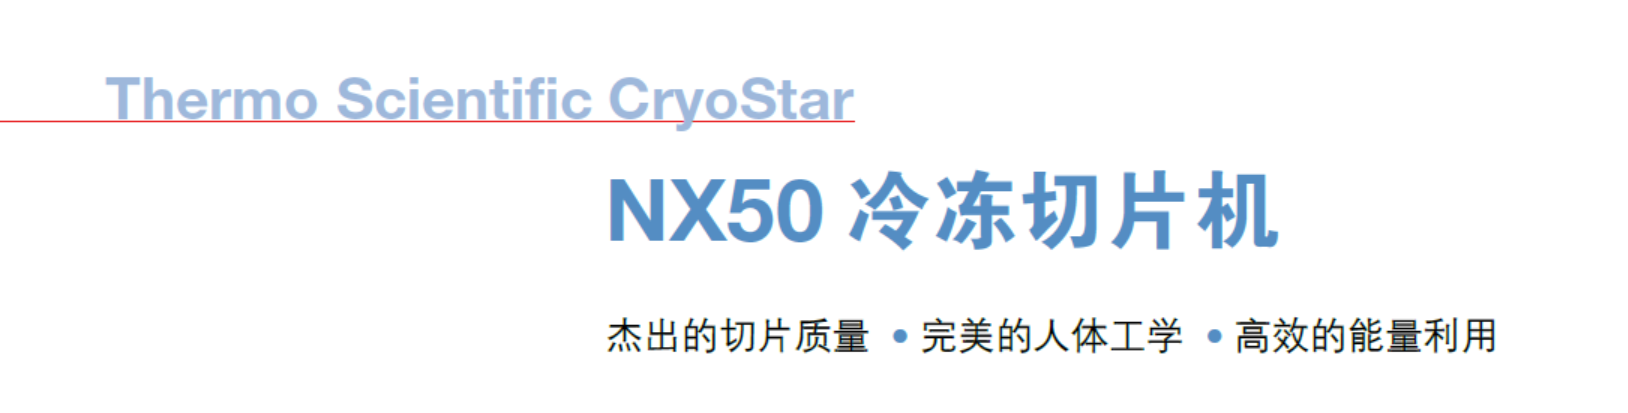 CryoStar NX50 冰冻切片机